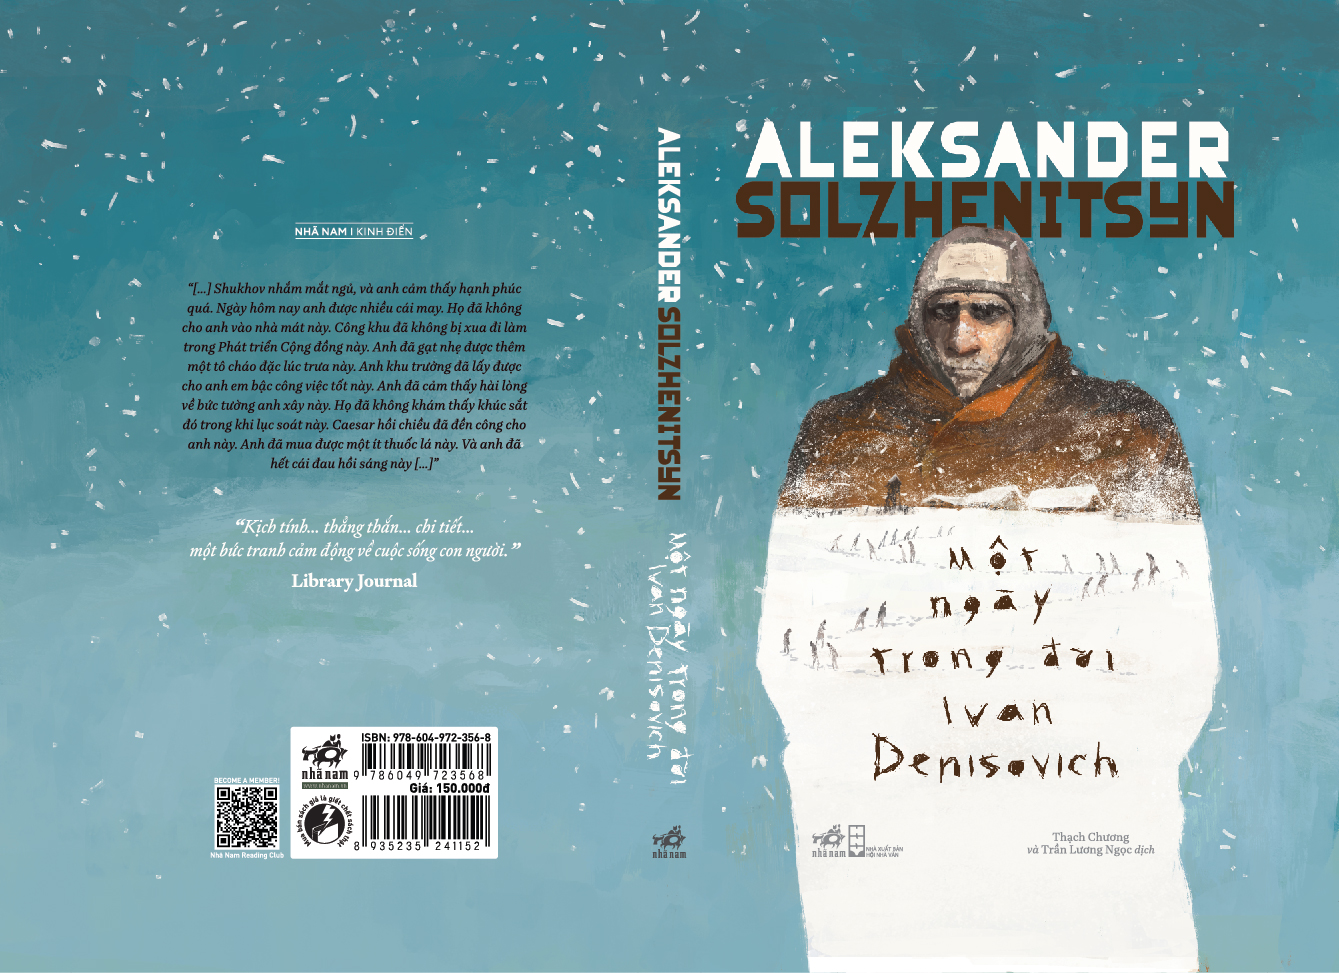 Sách - Một ngày trong đời Ivan Denisovich (Bìa cứng) (Aleksander Solzhenitsyn) (Nhã Nam Official)